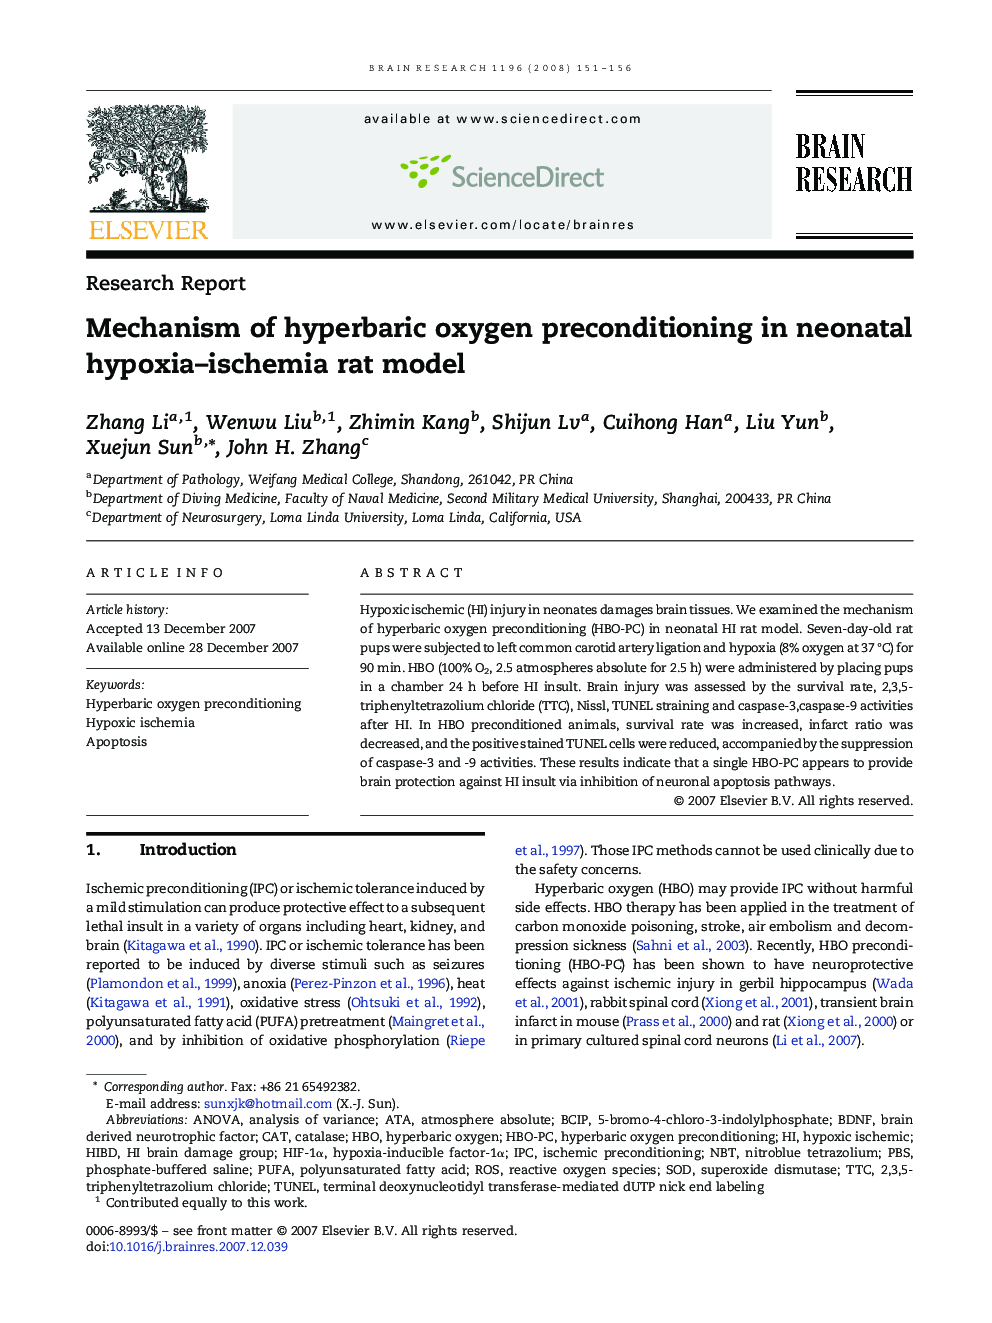 Mechanism of hyperbaric oxygen preconditioning in neonatal hypoxia-ischemia rat model